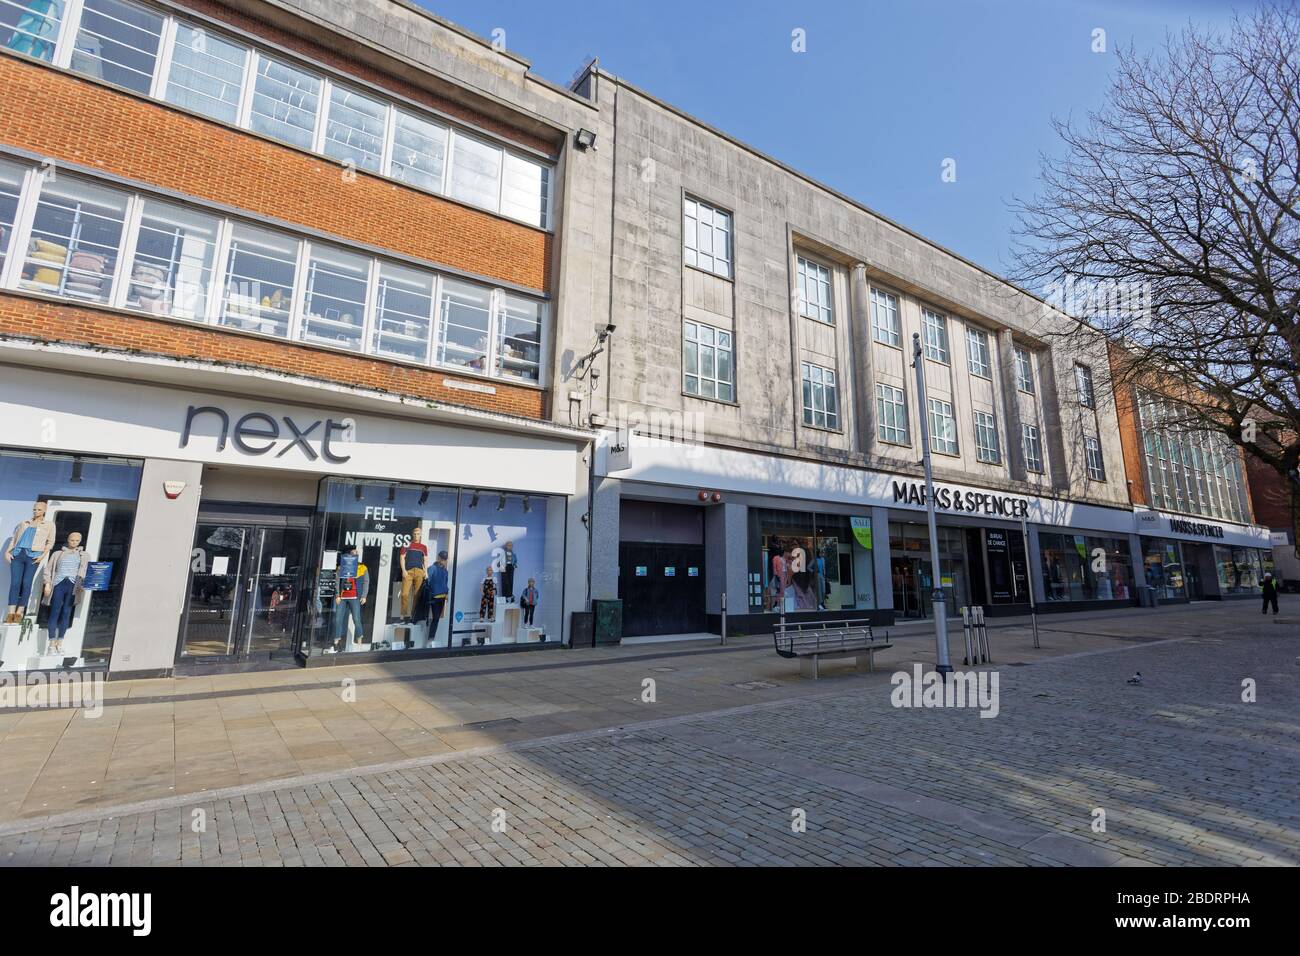 Im Bild: Oxford Street im verlassenen Swansea Stadtzentrum, Wales, Großbritannien. Dienstag 24 März 2020 Re: Covid-19 Coronavirus Pandemie, UK. Stockfoto